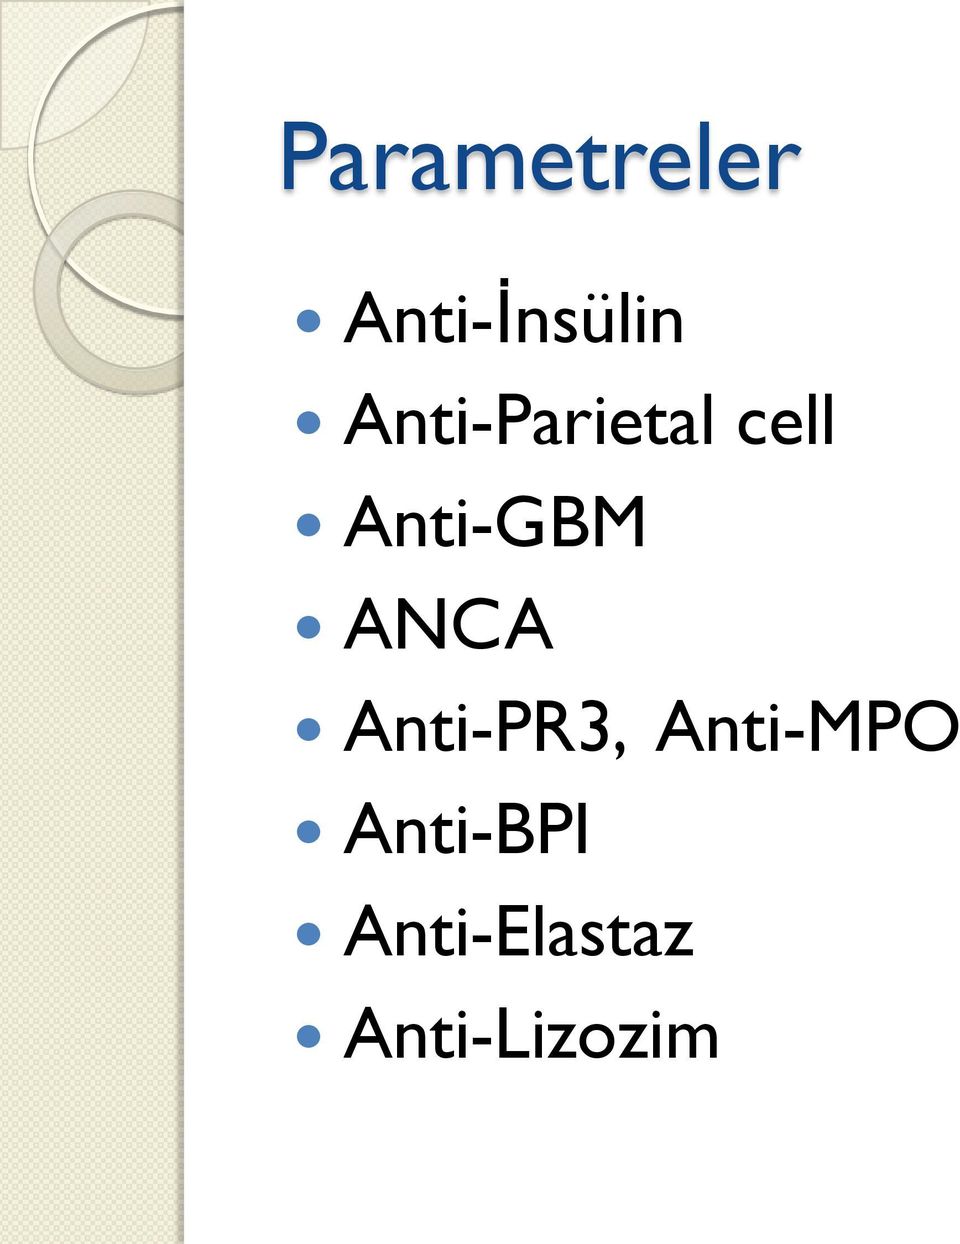 ANCA Anti-PR3, Anti-MPO